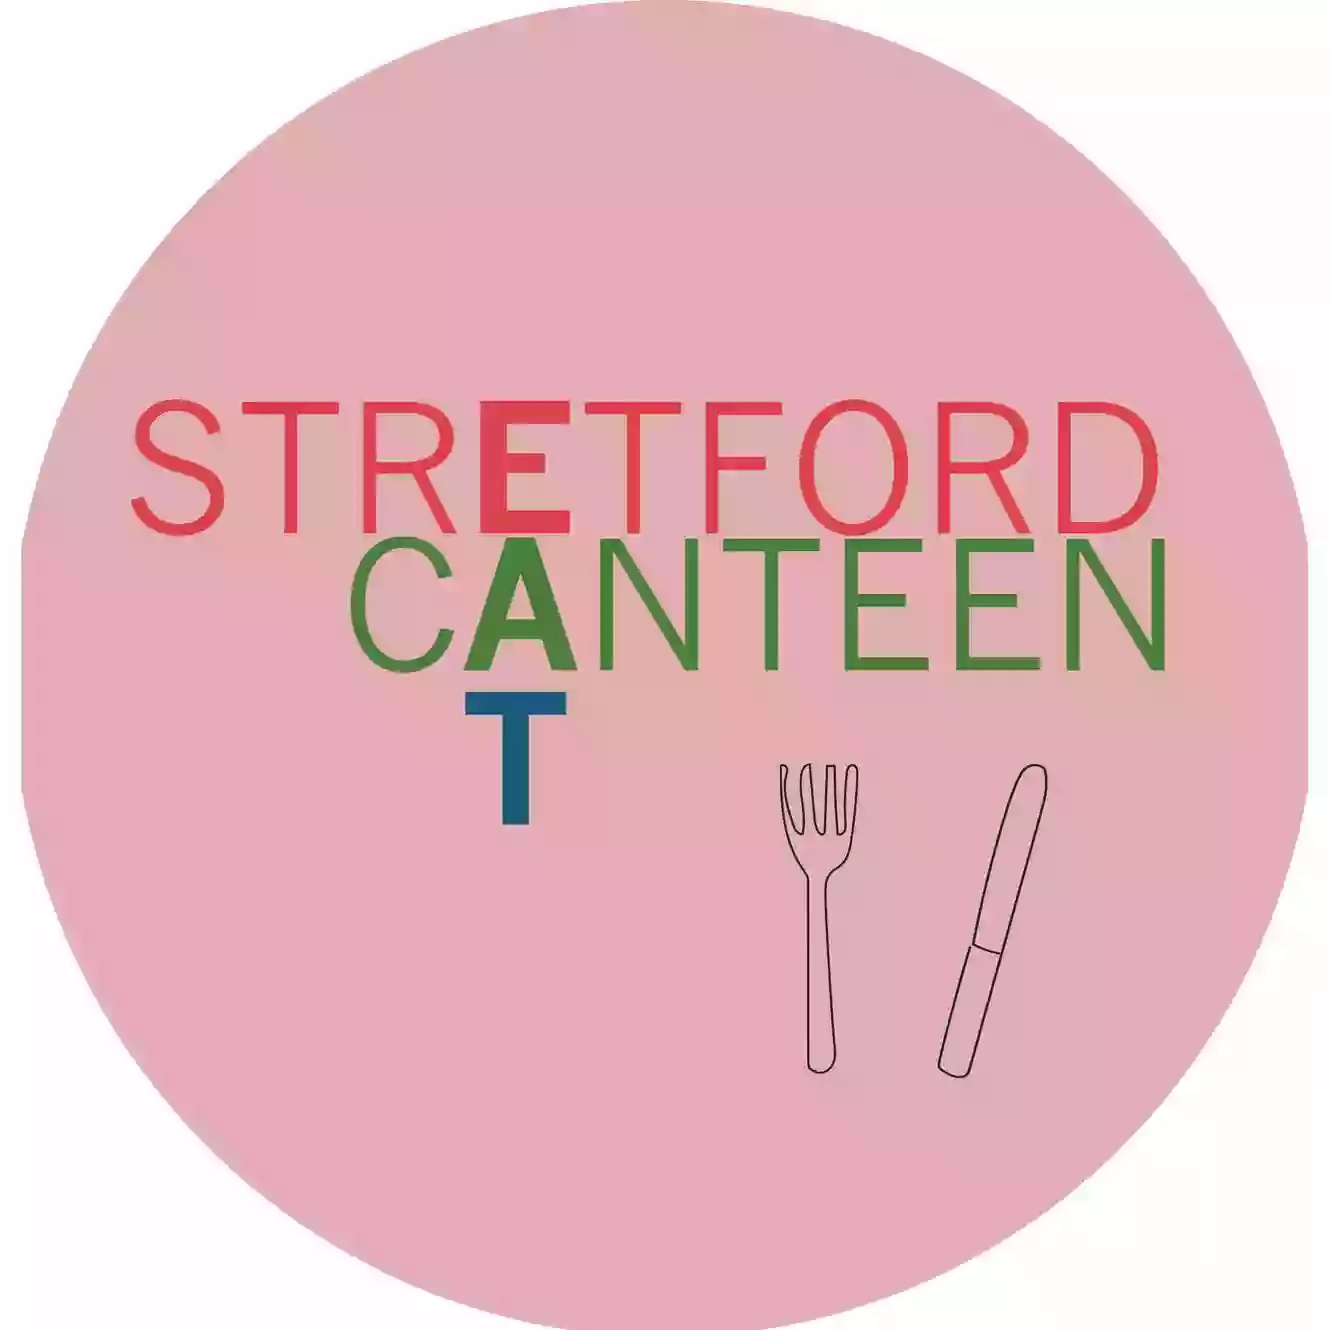 Stretford Canteen